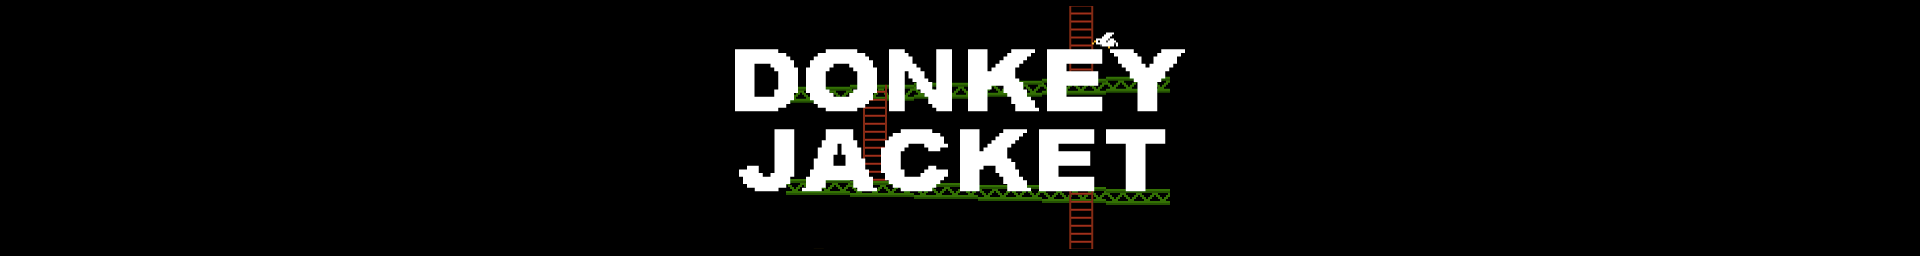 Donkey Jacket